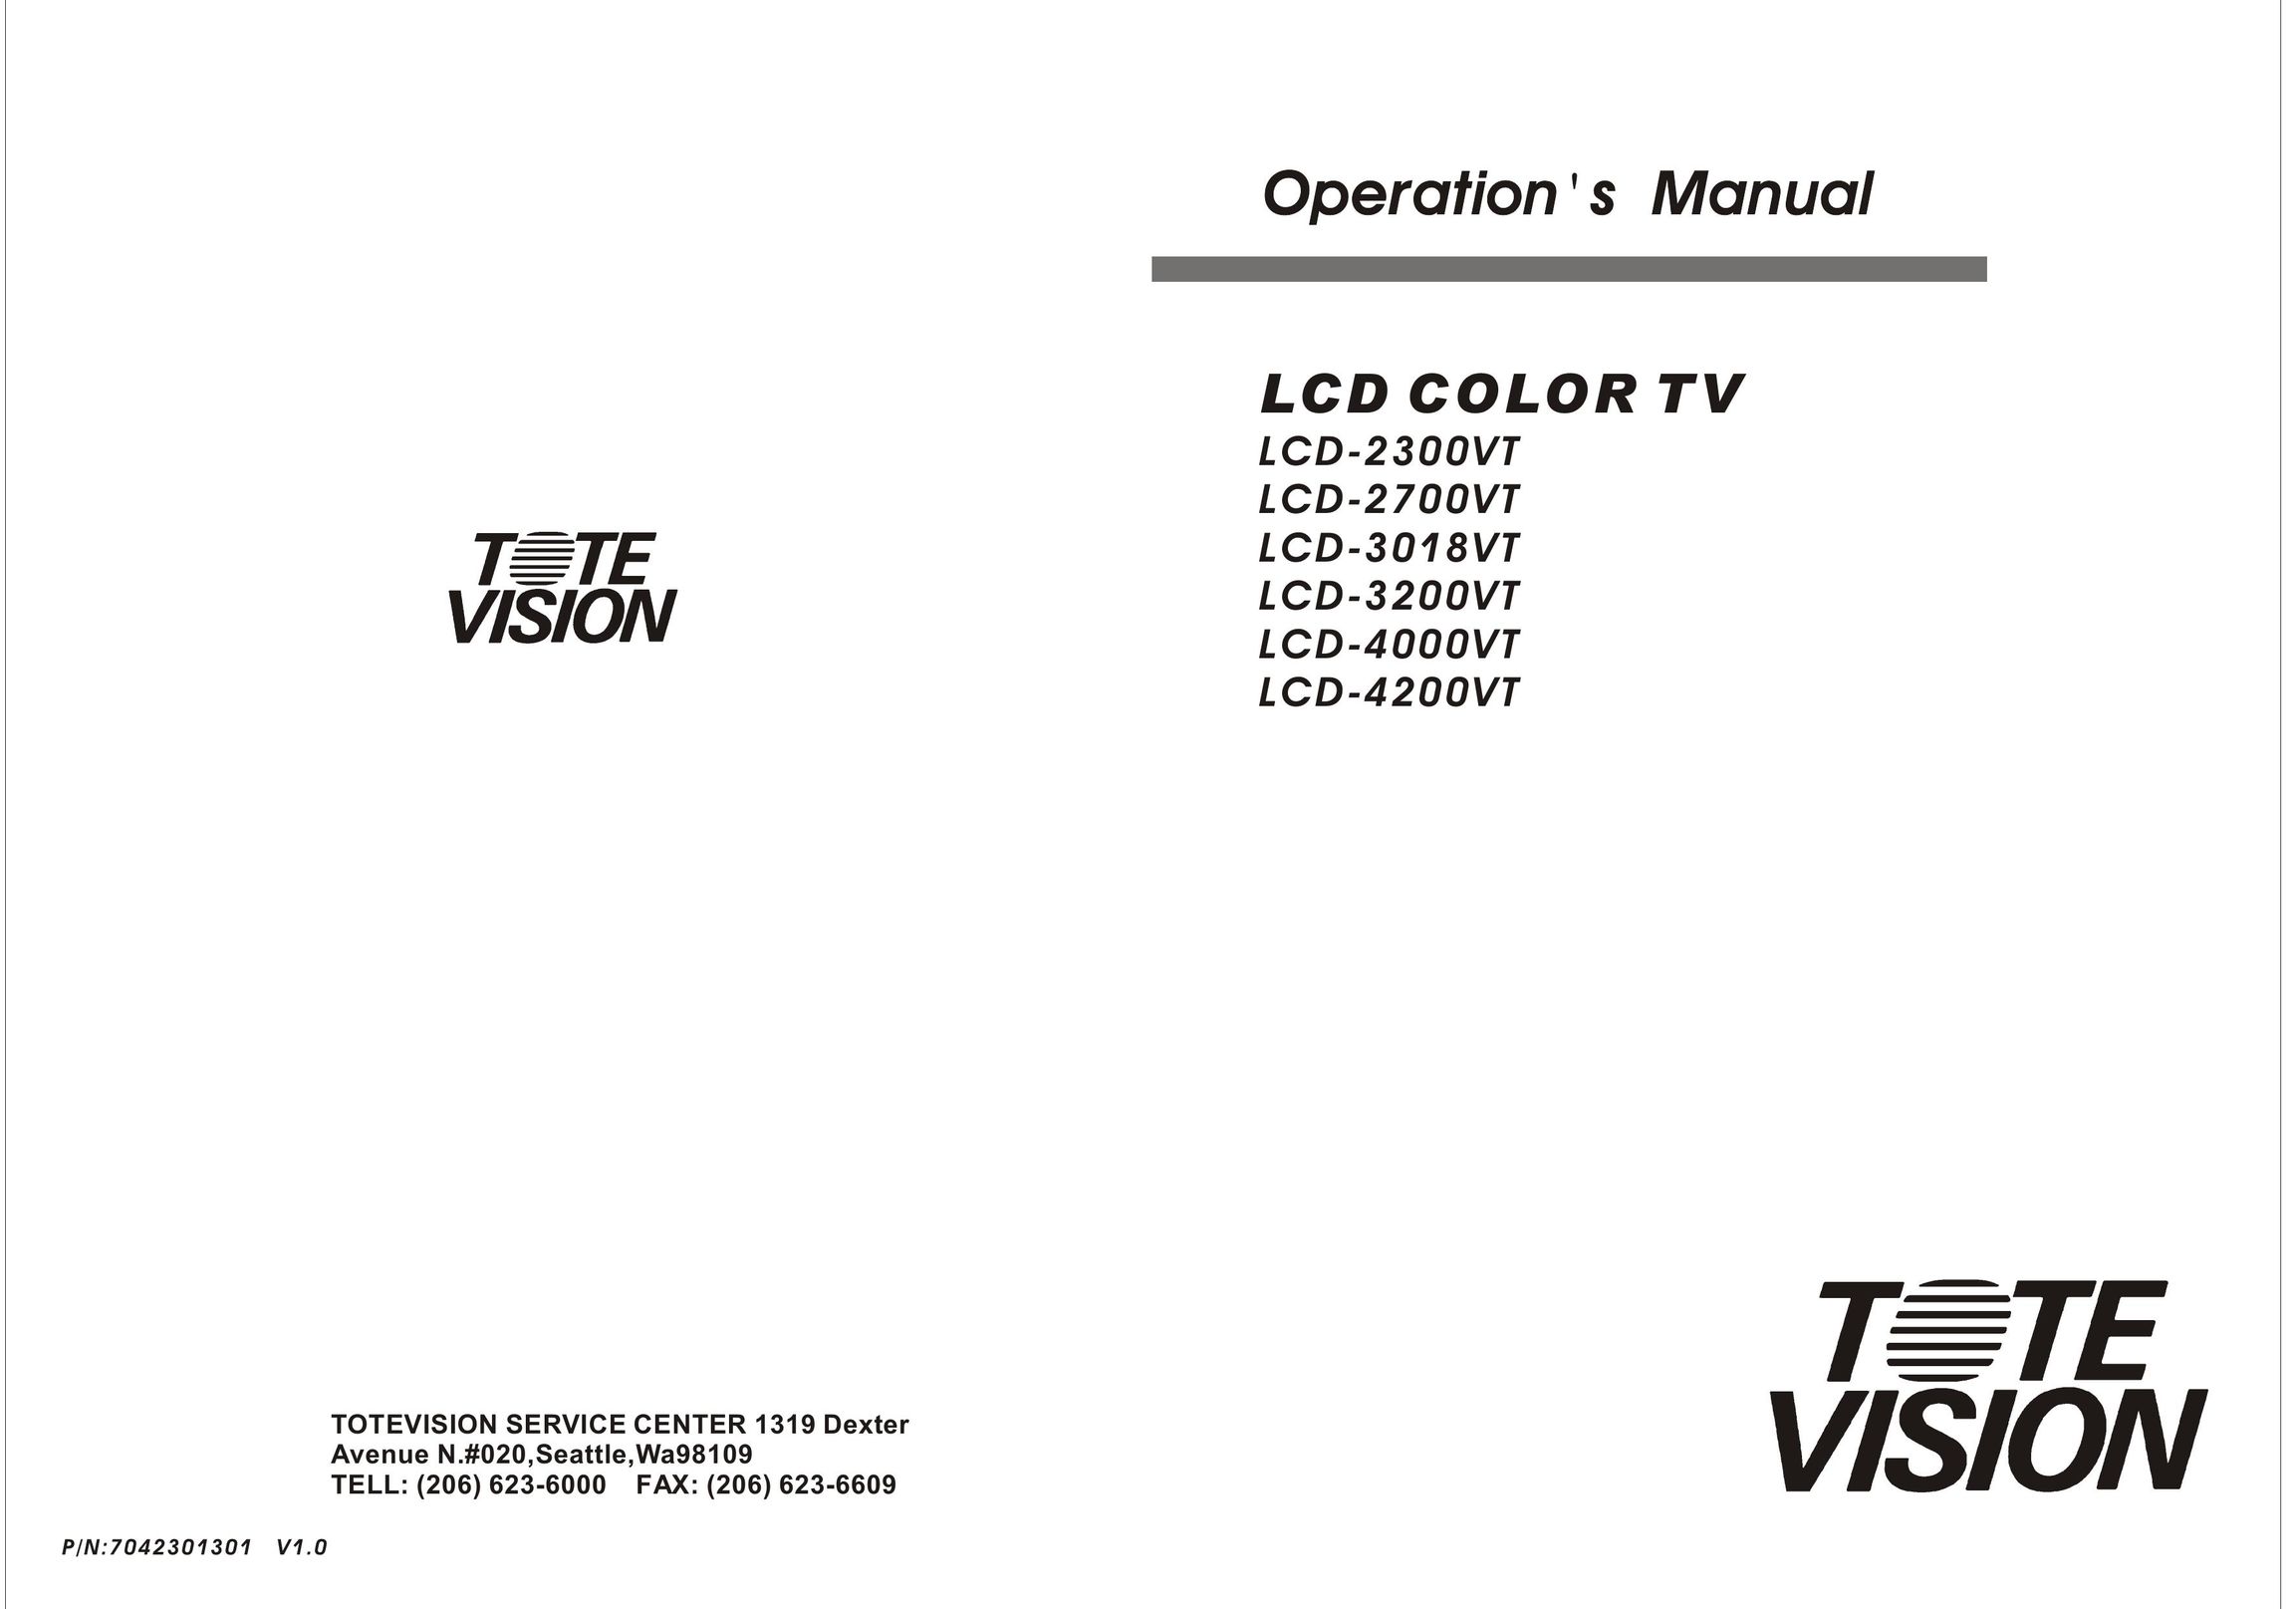 Tote Vision LCD-2300VT Flat Panel Television User Manual